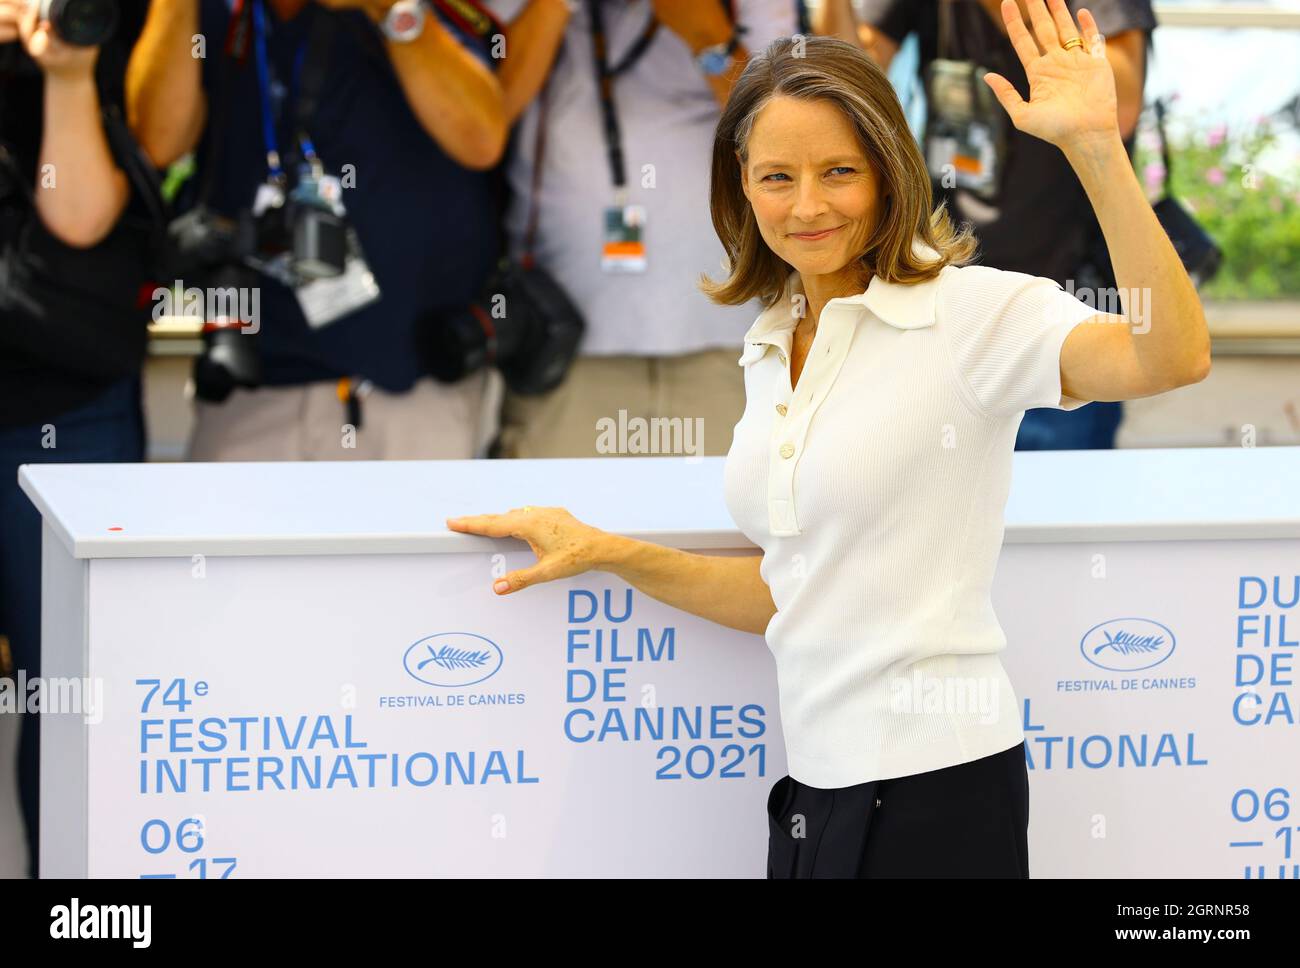 Cannes, Francia - 06 de julio de 2021: Festival de Cine de Cannes con la actriz Jodie Foster en la galería de fotos oficial del Palais des Festivals. Cine, Festival de Cannes, Mandoga Media Alemania Foto de stock